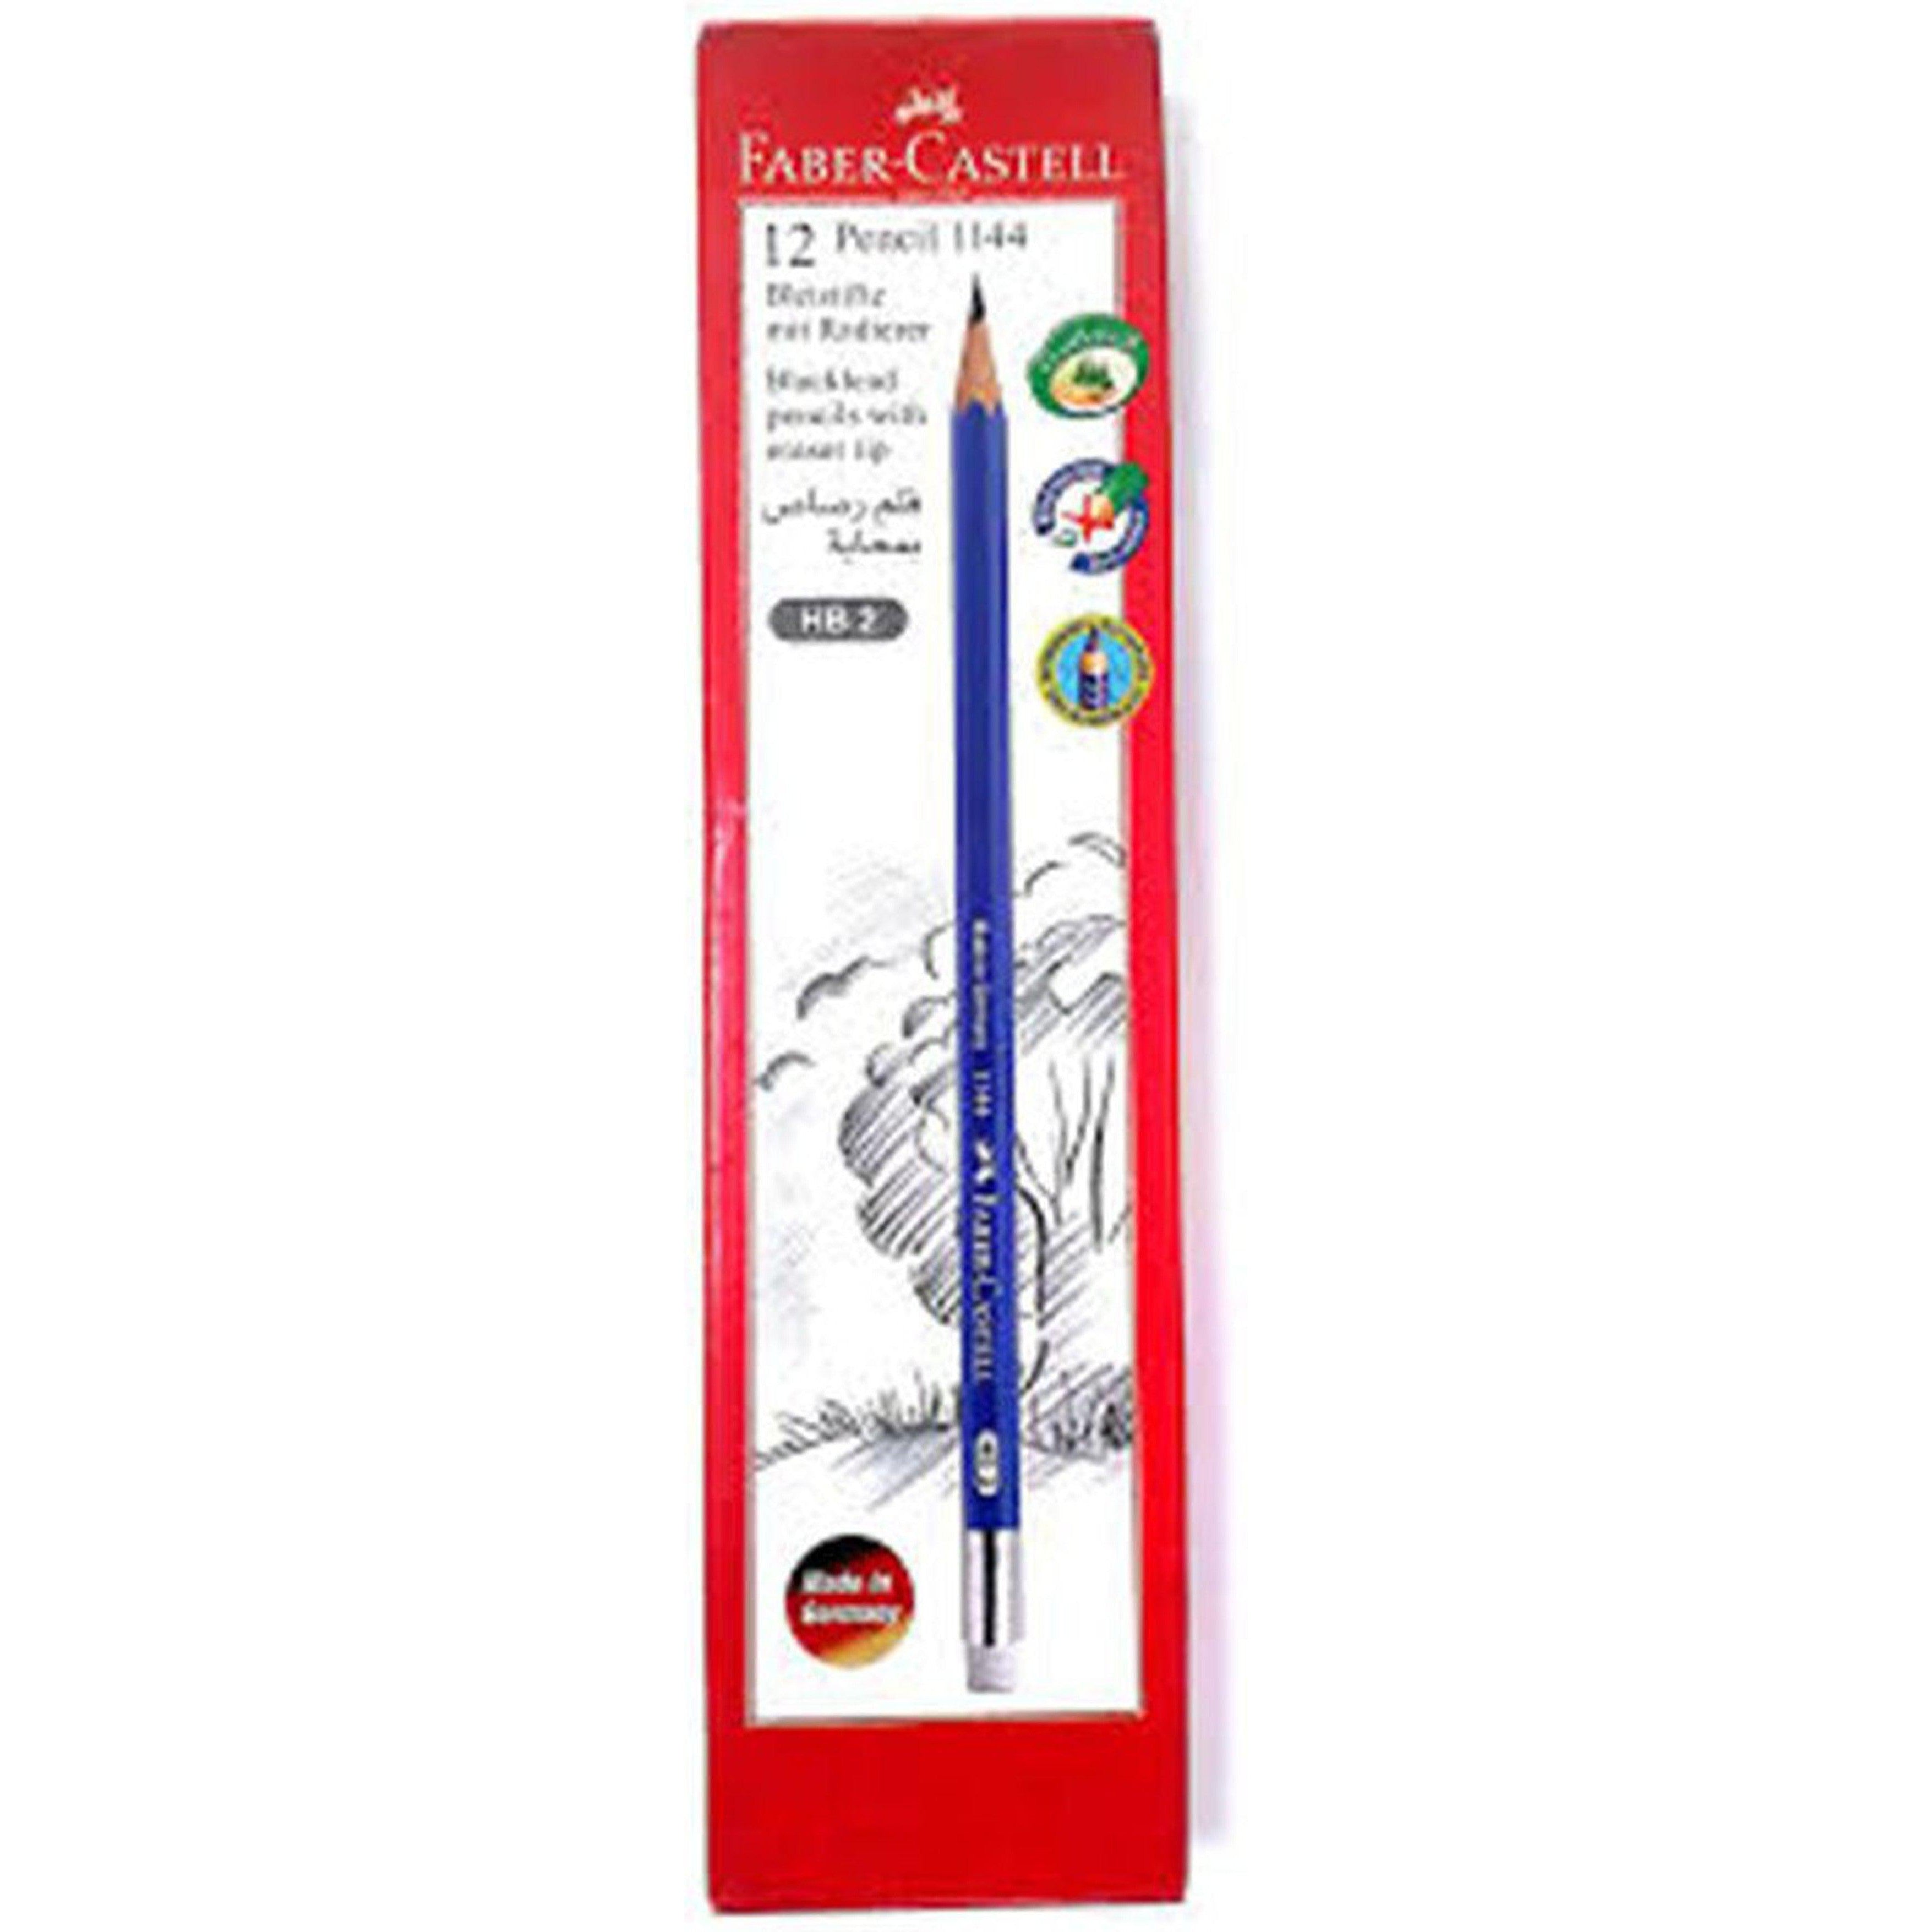 Faber Castell 12 Pencil-Pencils-Faber Castell-Star Light Kuwait